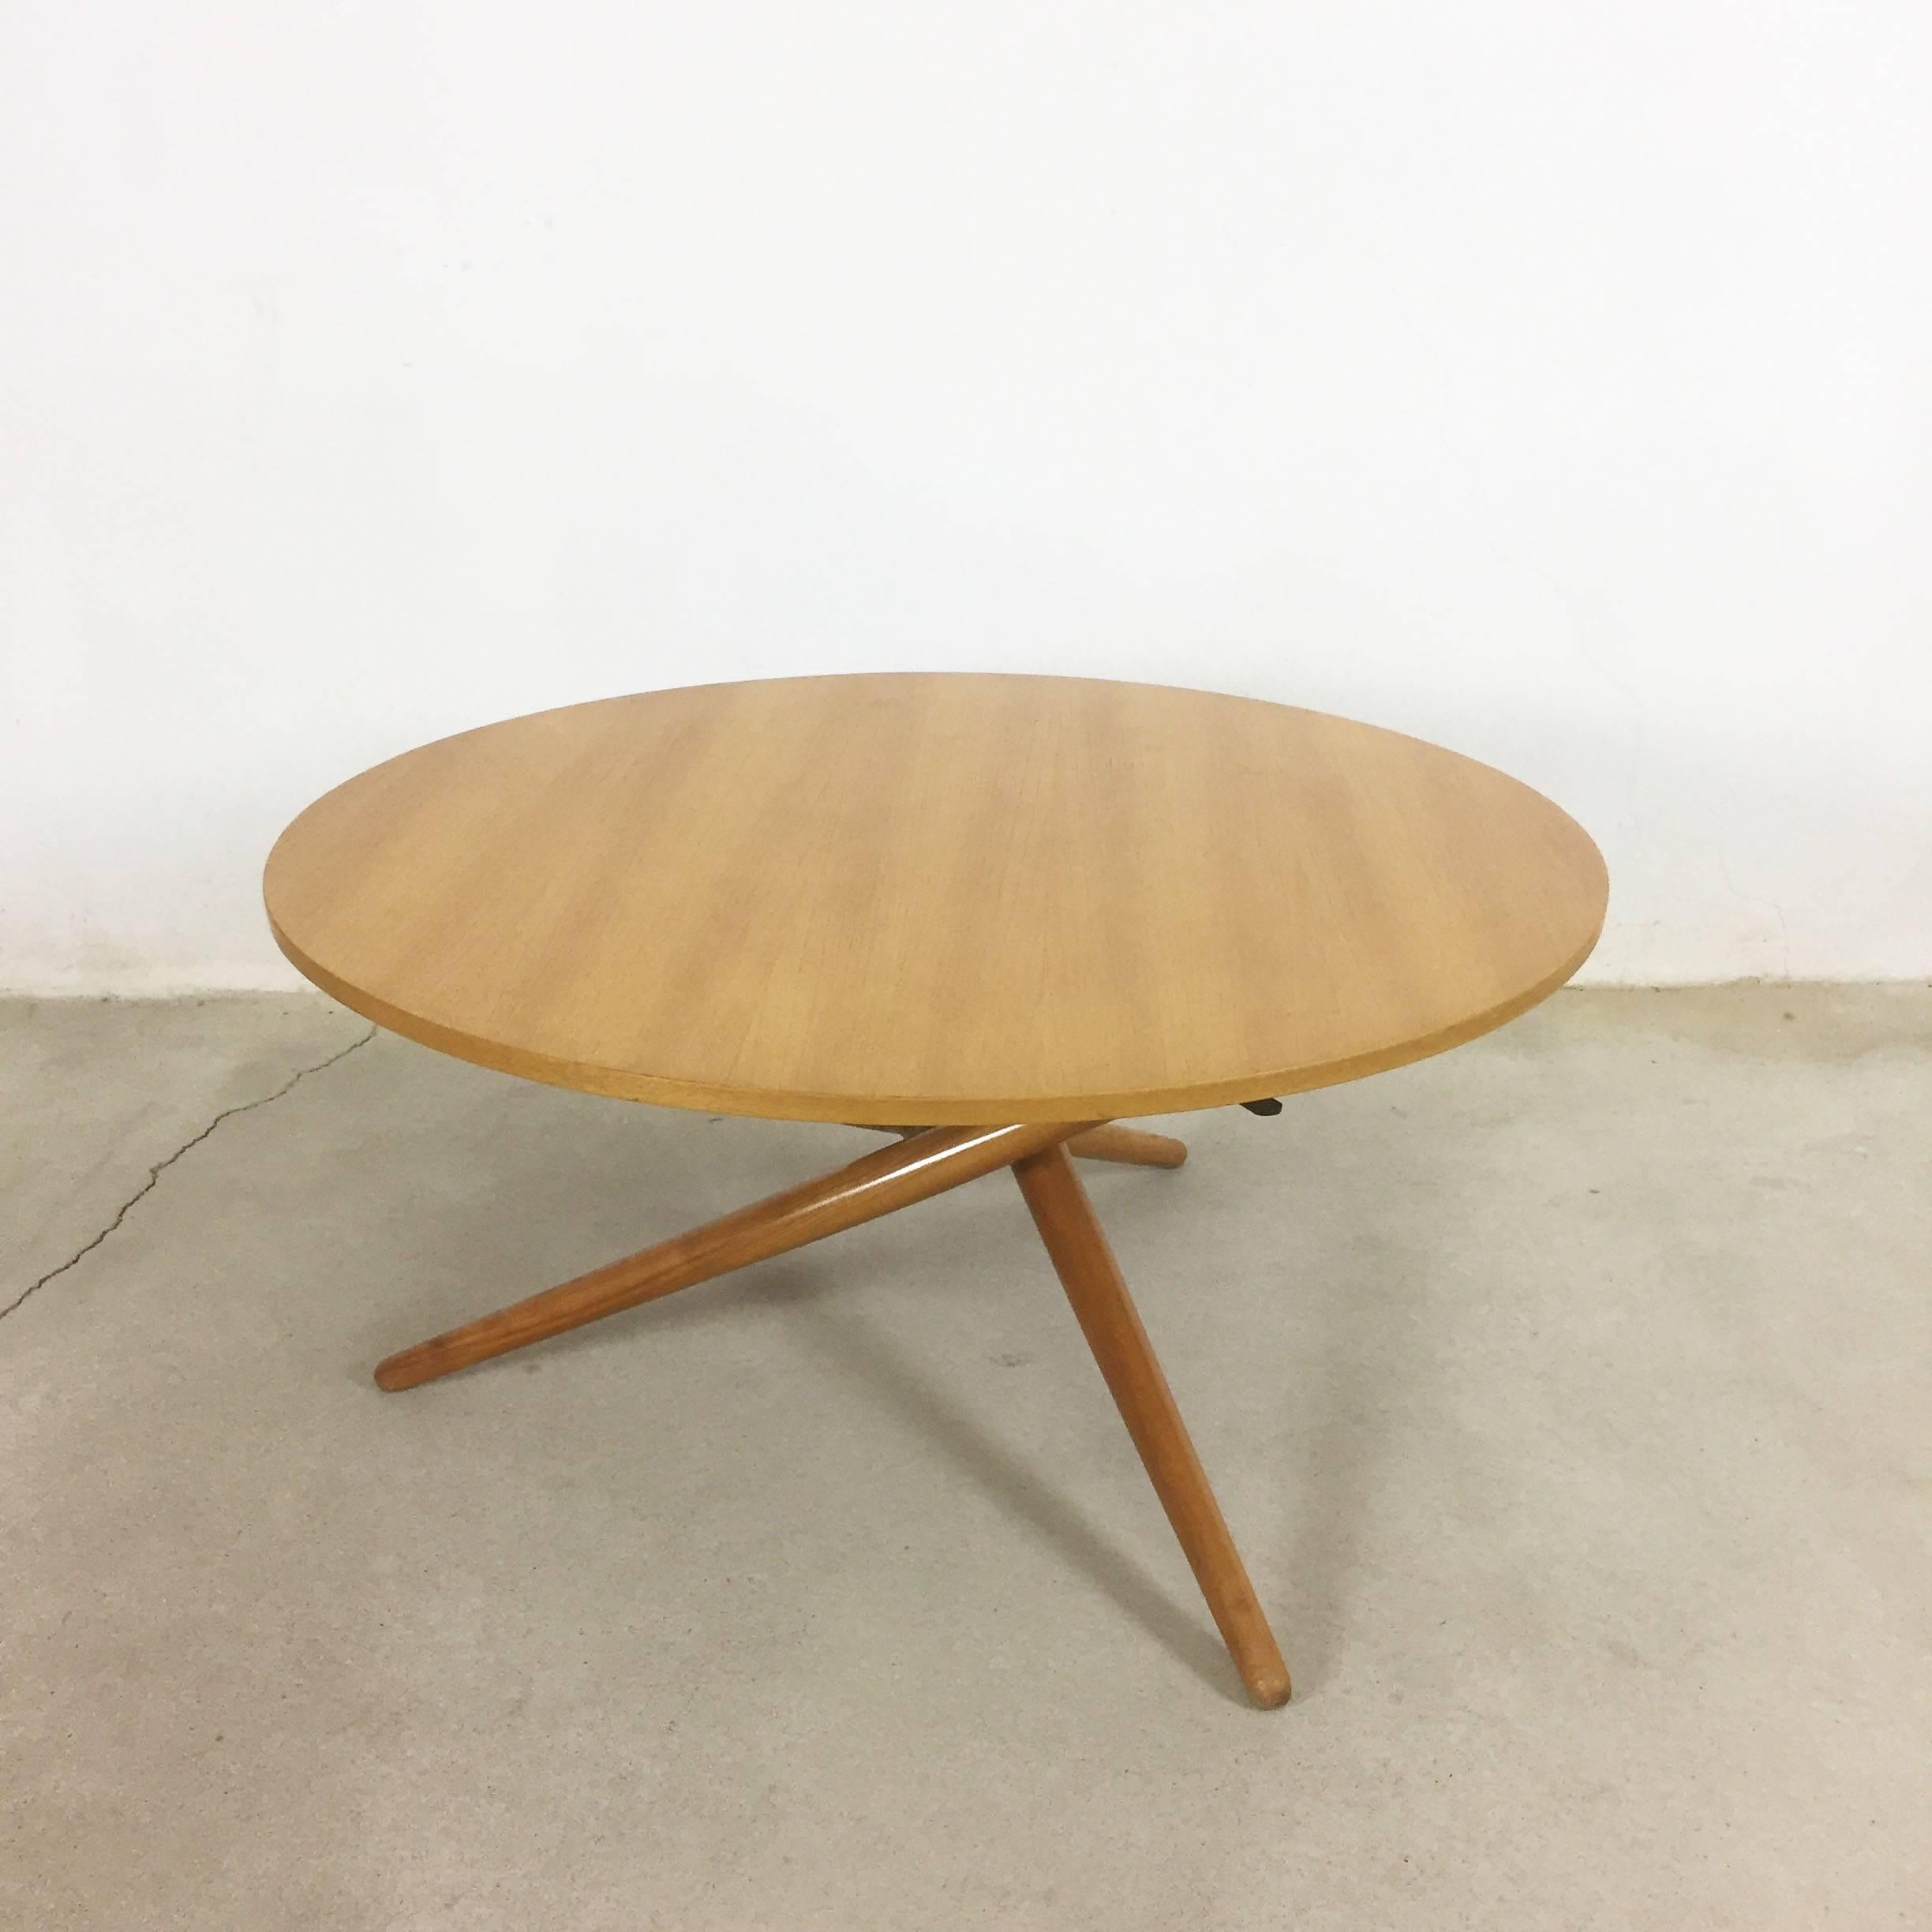 20th Century Movex Table, Ess.Tee.Tisch Cherrywood, Jürg Bally for Wohnhilfe Zürich, 1951